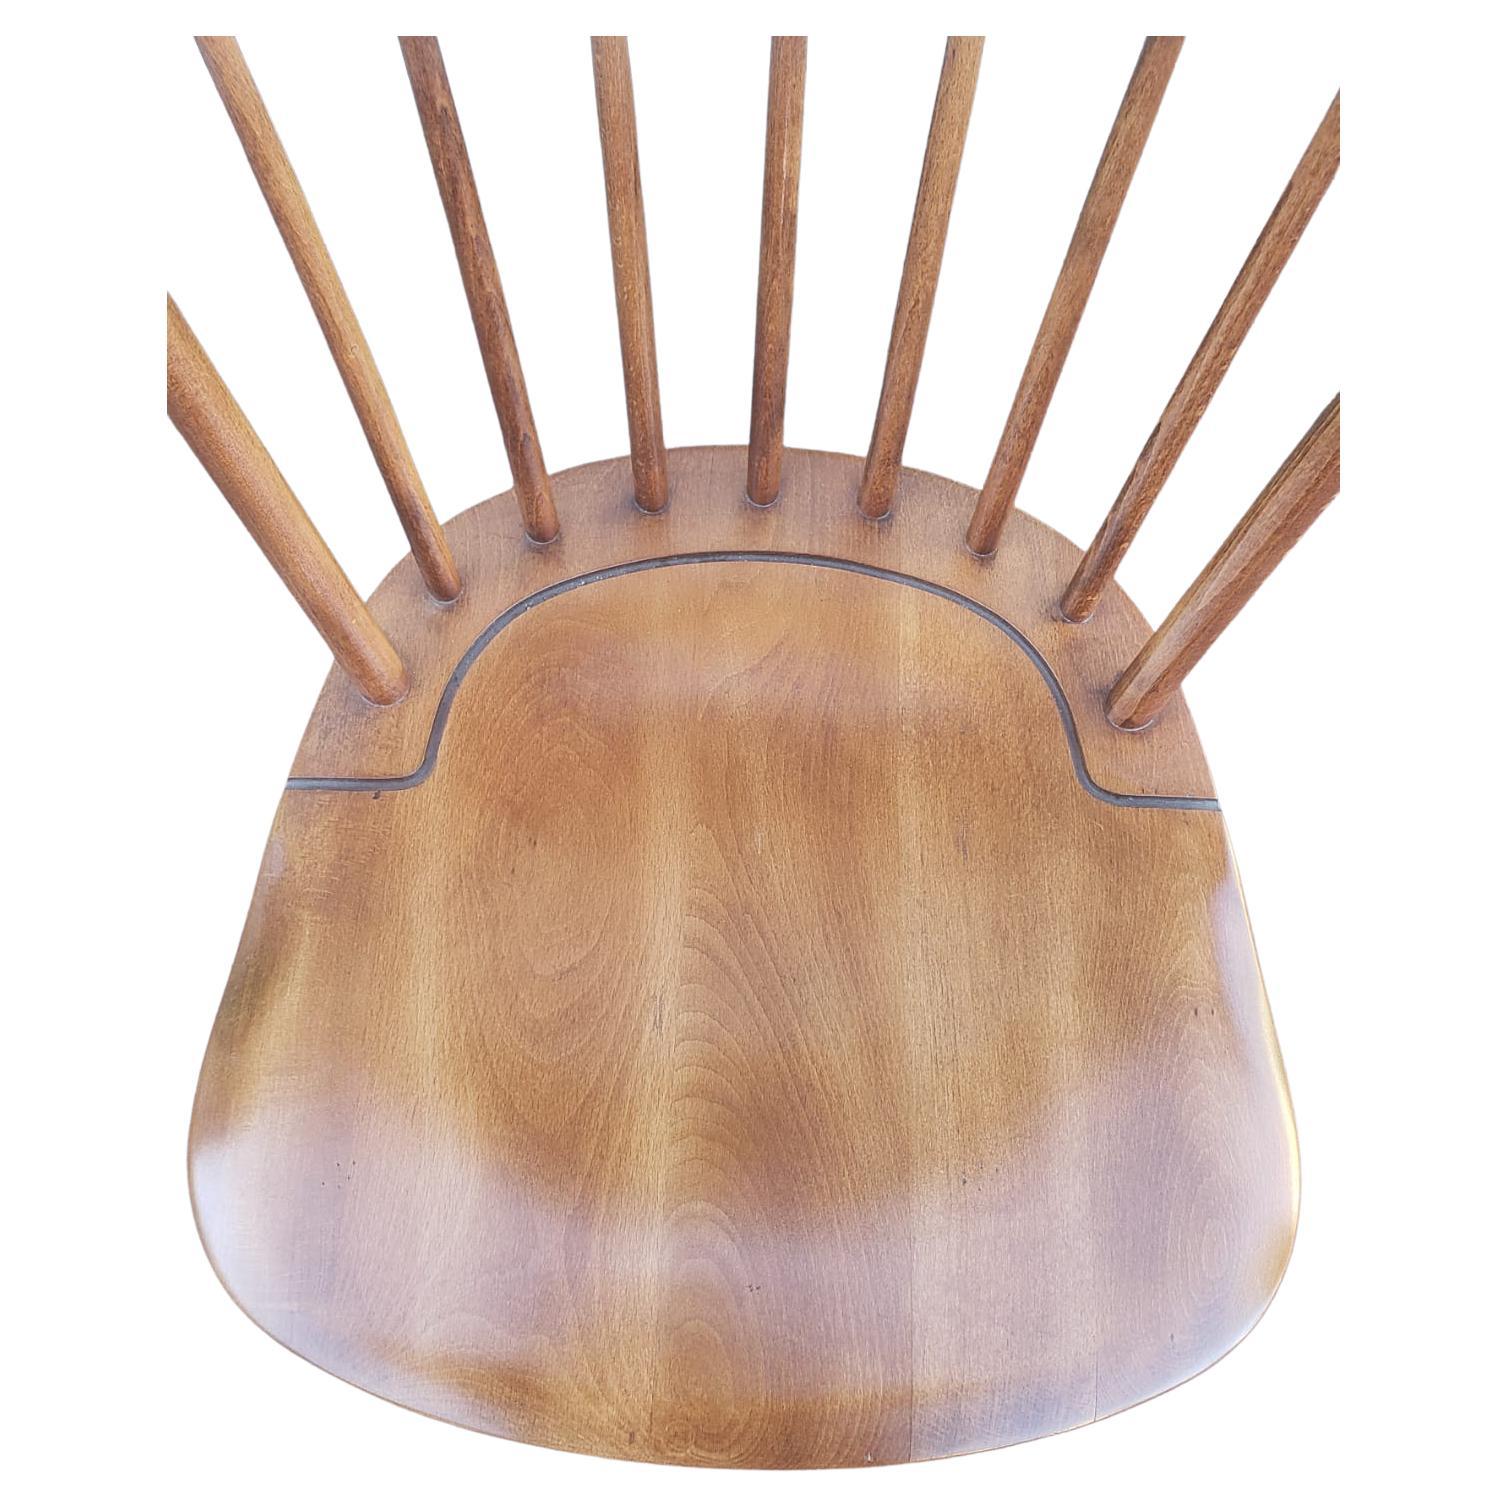 Jugoslawischer Windsor-Stuhl aus Kirsche mit Bambusimitat. Eingravierter Stempel. Ausgezeichneter Jahrgang. Kirsche massiv. 
Maße: 16,5' x 16,5' x 36